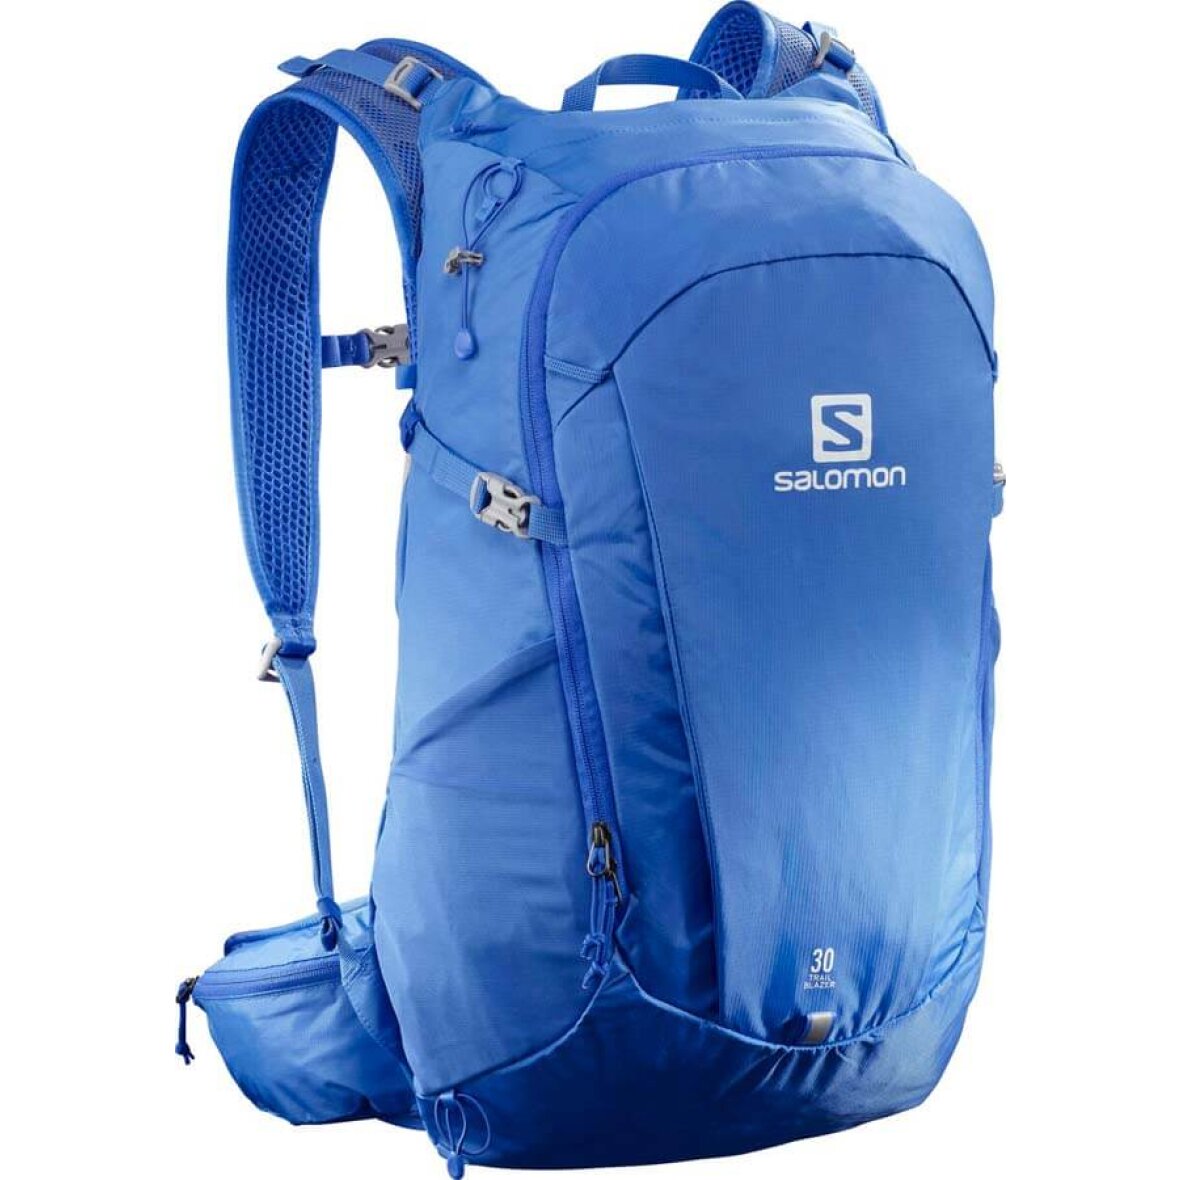 Salomon 30 - blå rygsæk fra Salomon - Køb den